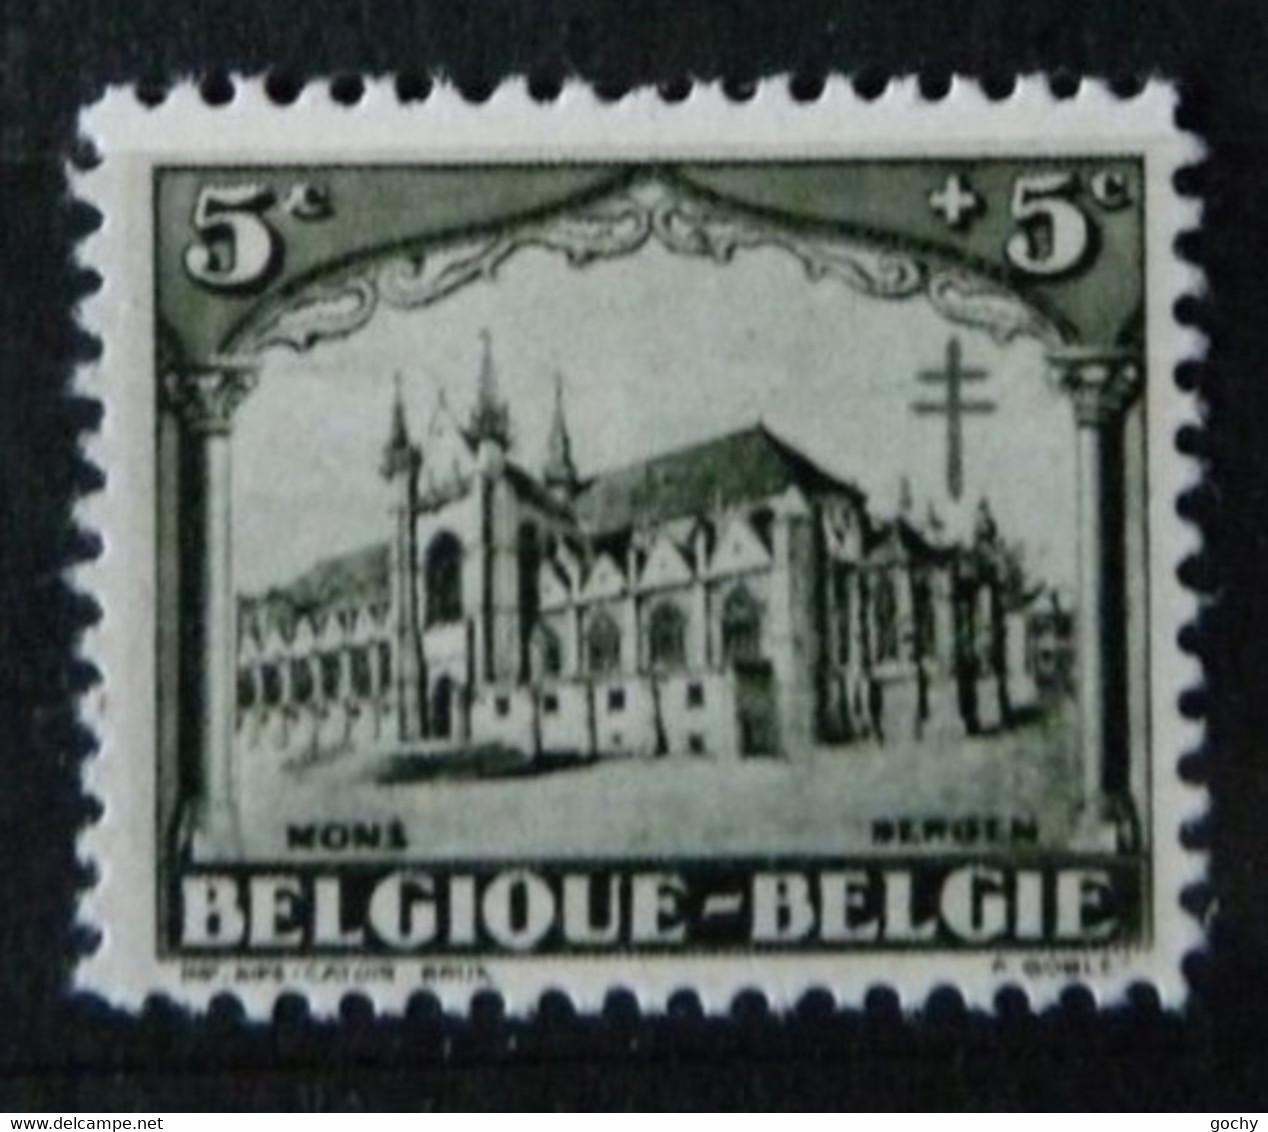 Belgium  :  1928 -  N° 267  ;  Cat.: 12,50€  Essai De Couleur  Dentelé - Proofs & Reprints